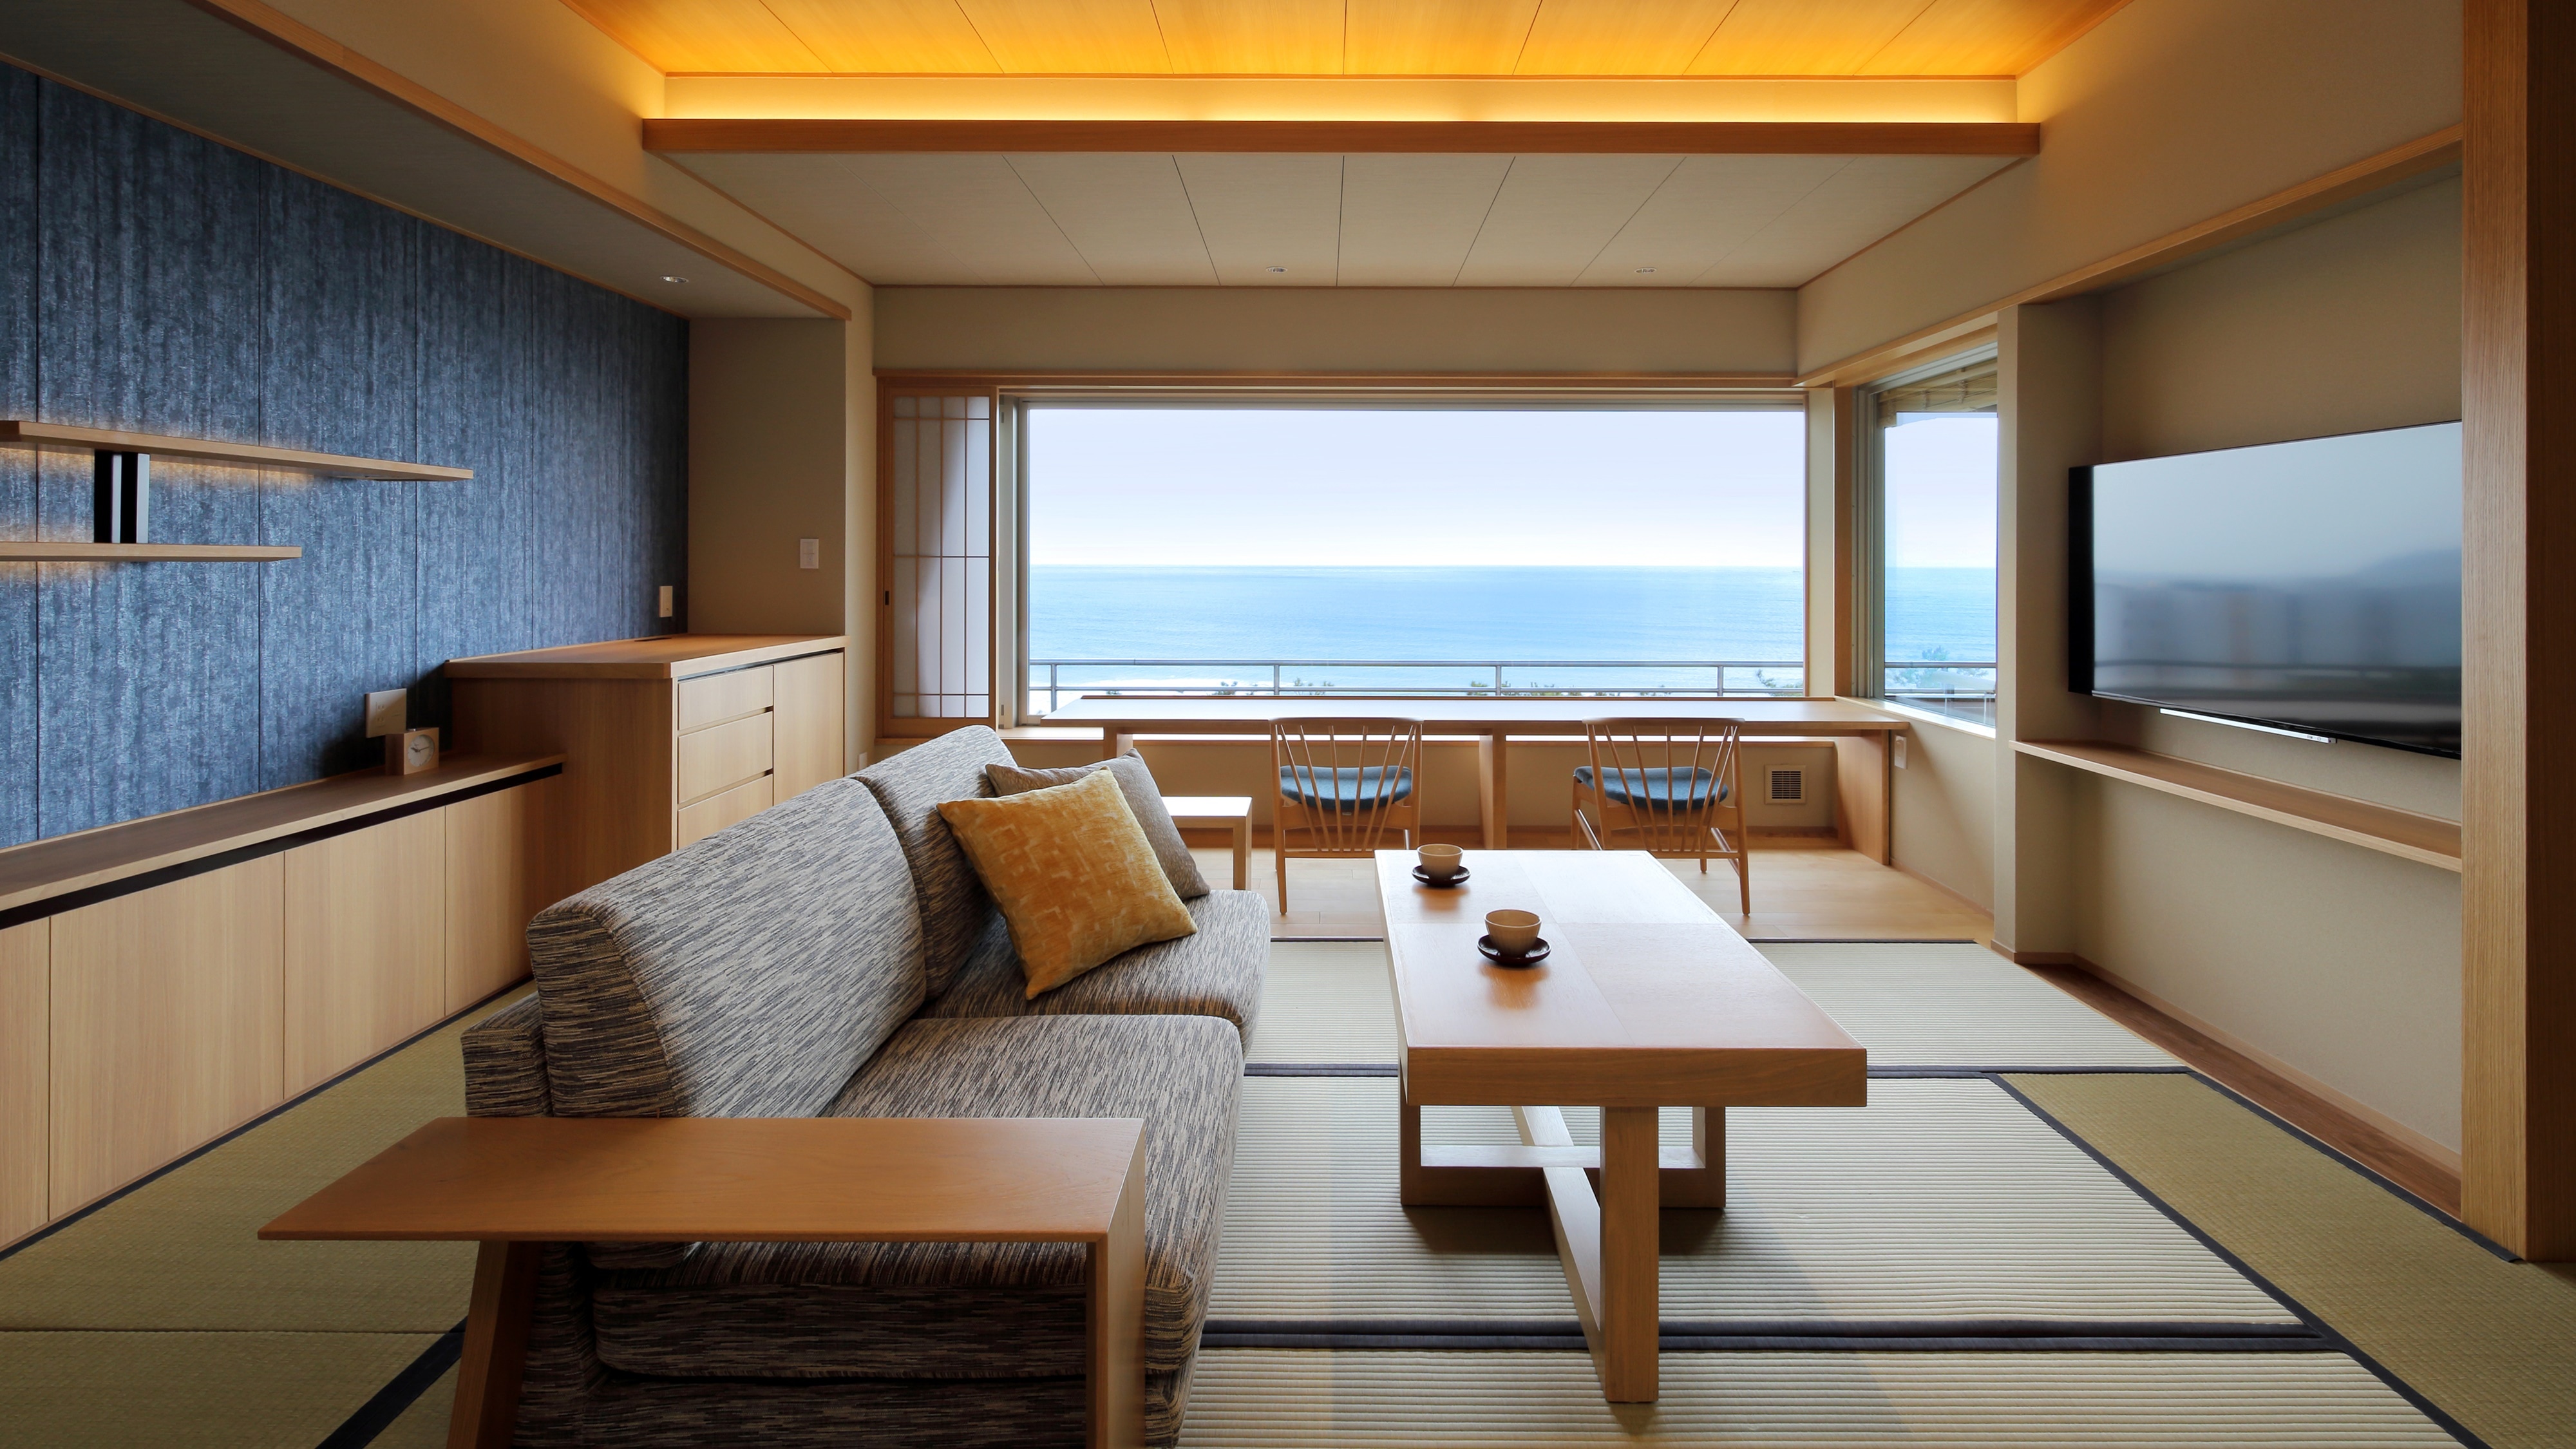 BARU: Kamar bergaya Jepang-Barat dengan mata air panas setengah terbuka (kamar bergaya Jepang + tempat tidur TW: tipe view counter) [7F]